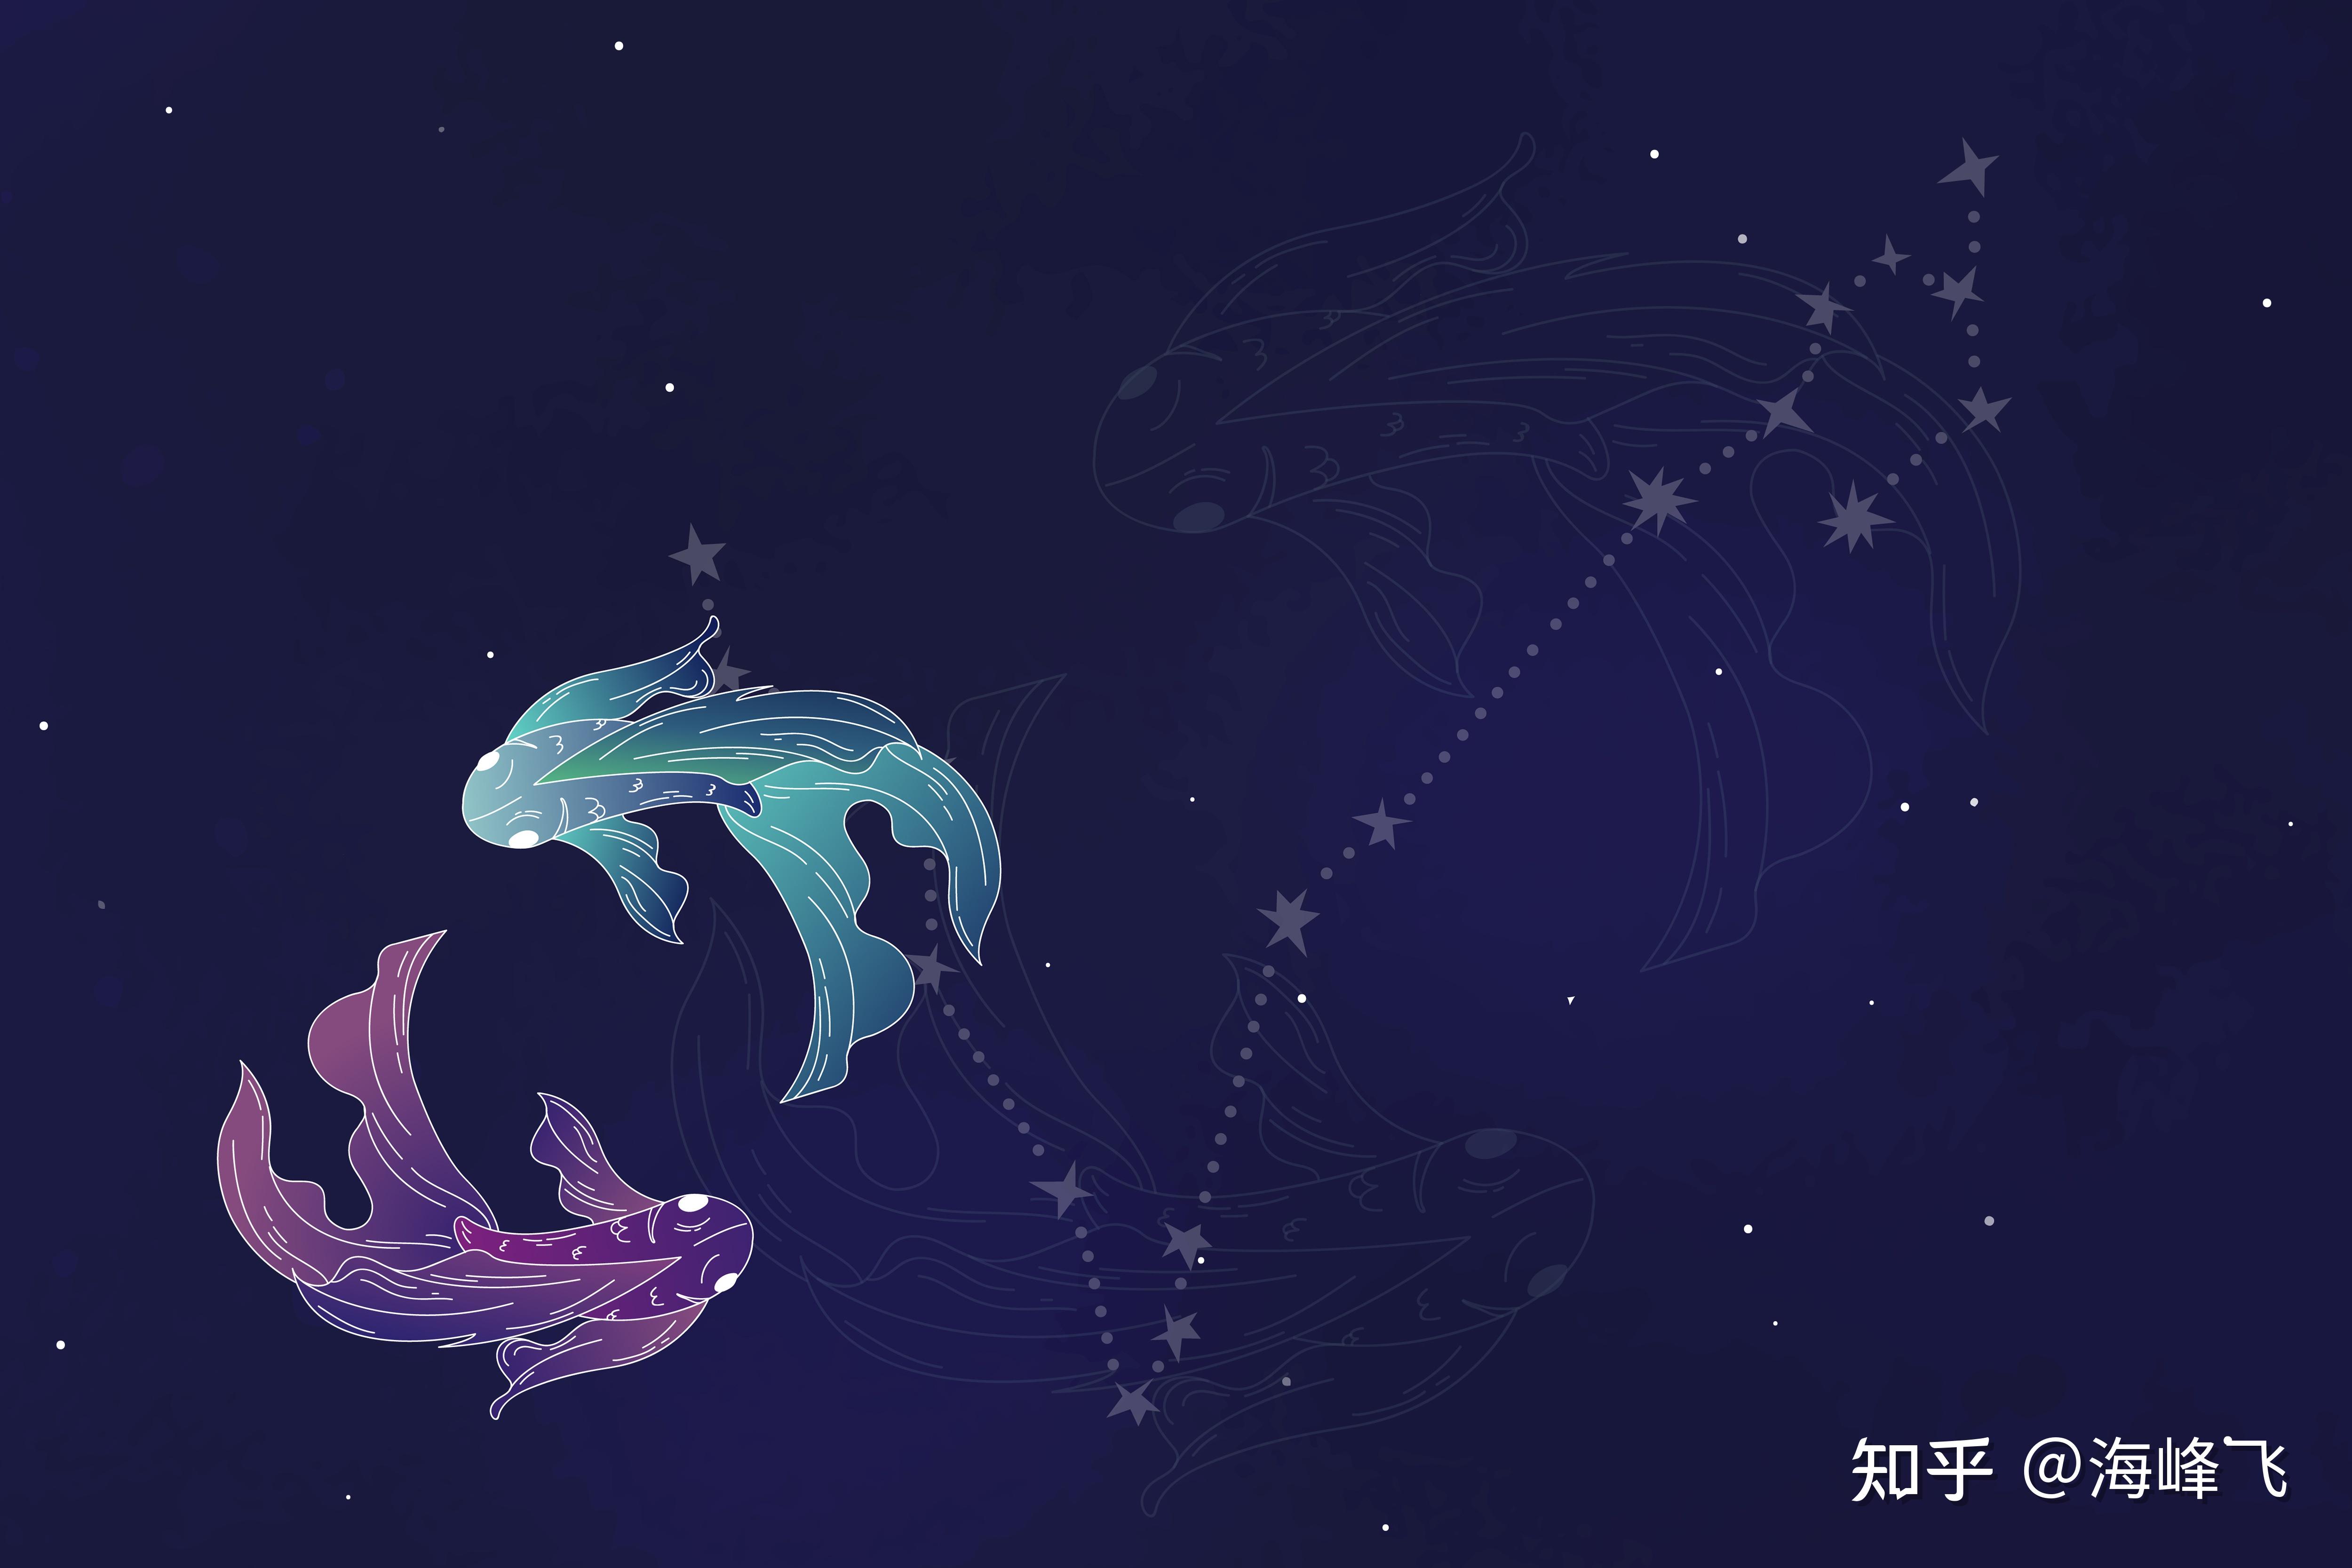 十二星座系列插画之【双鱼】风格插画设计作品-设计人才灵活用工-设计DNA